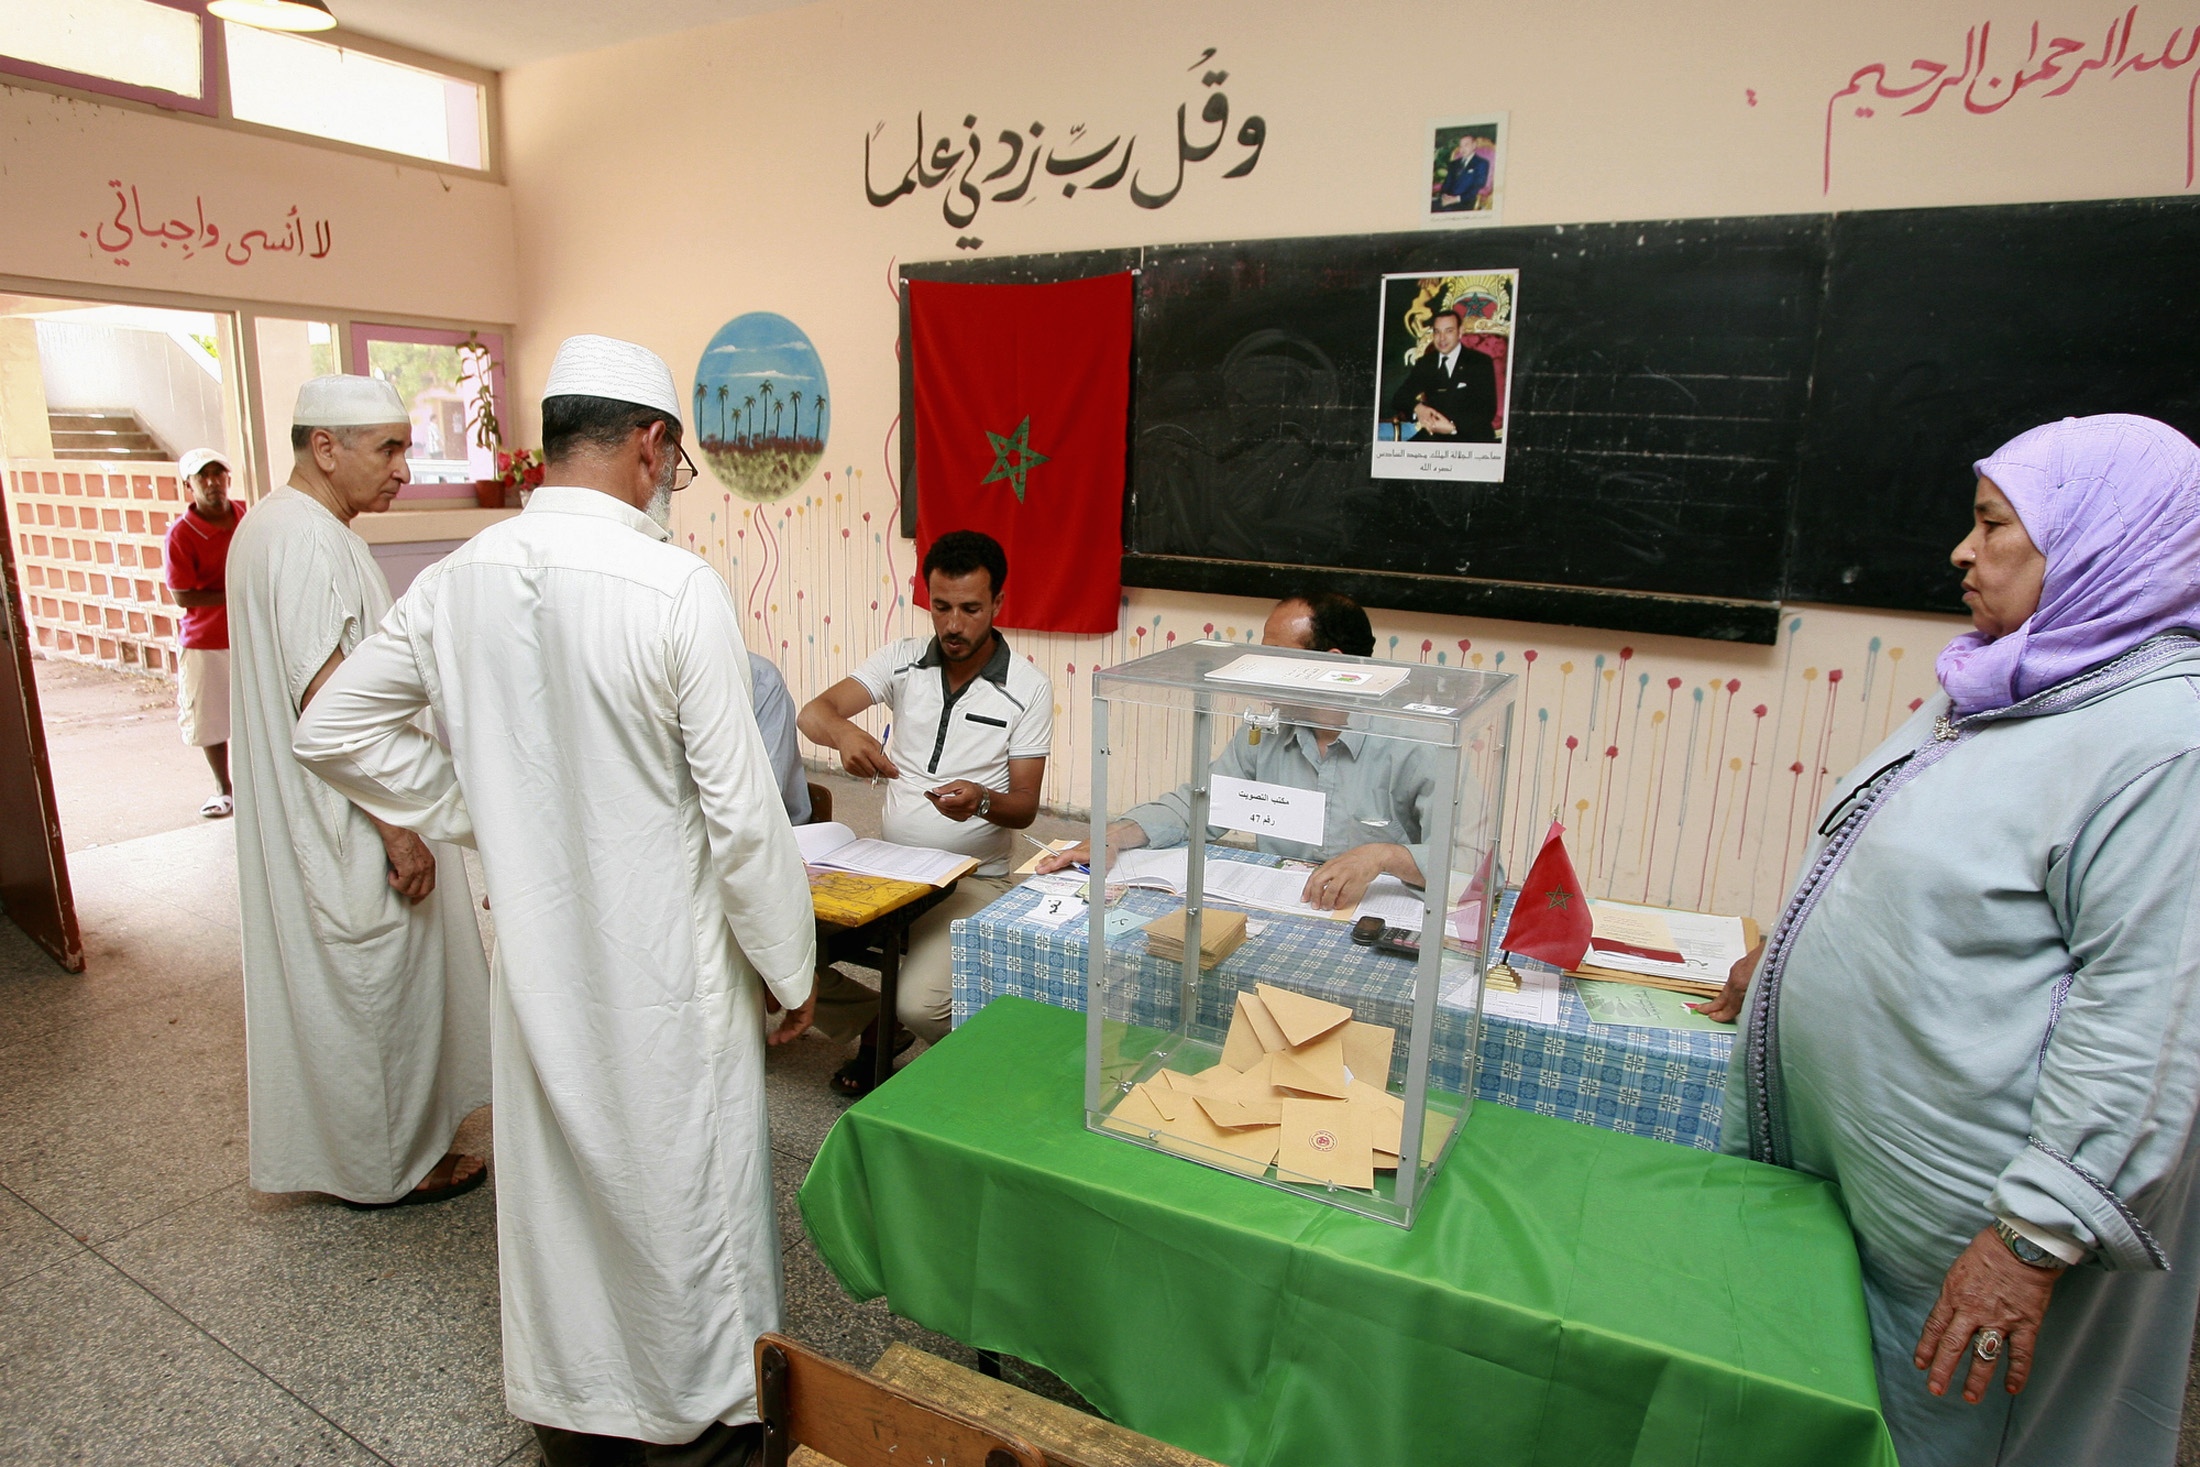 Ικανοποίηση για το δημοψήφισμα στο Μαρόκο